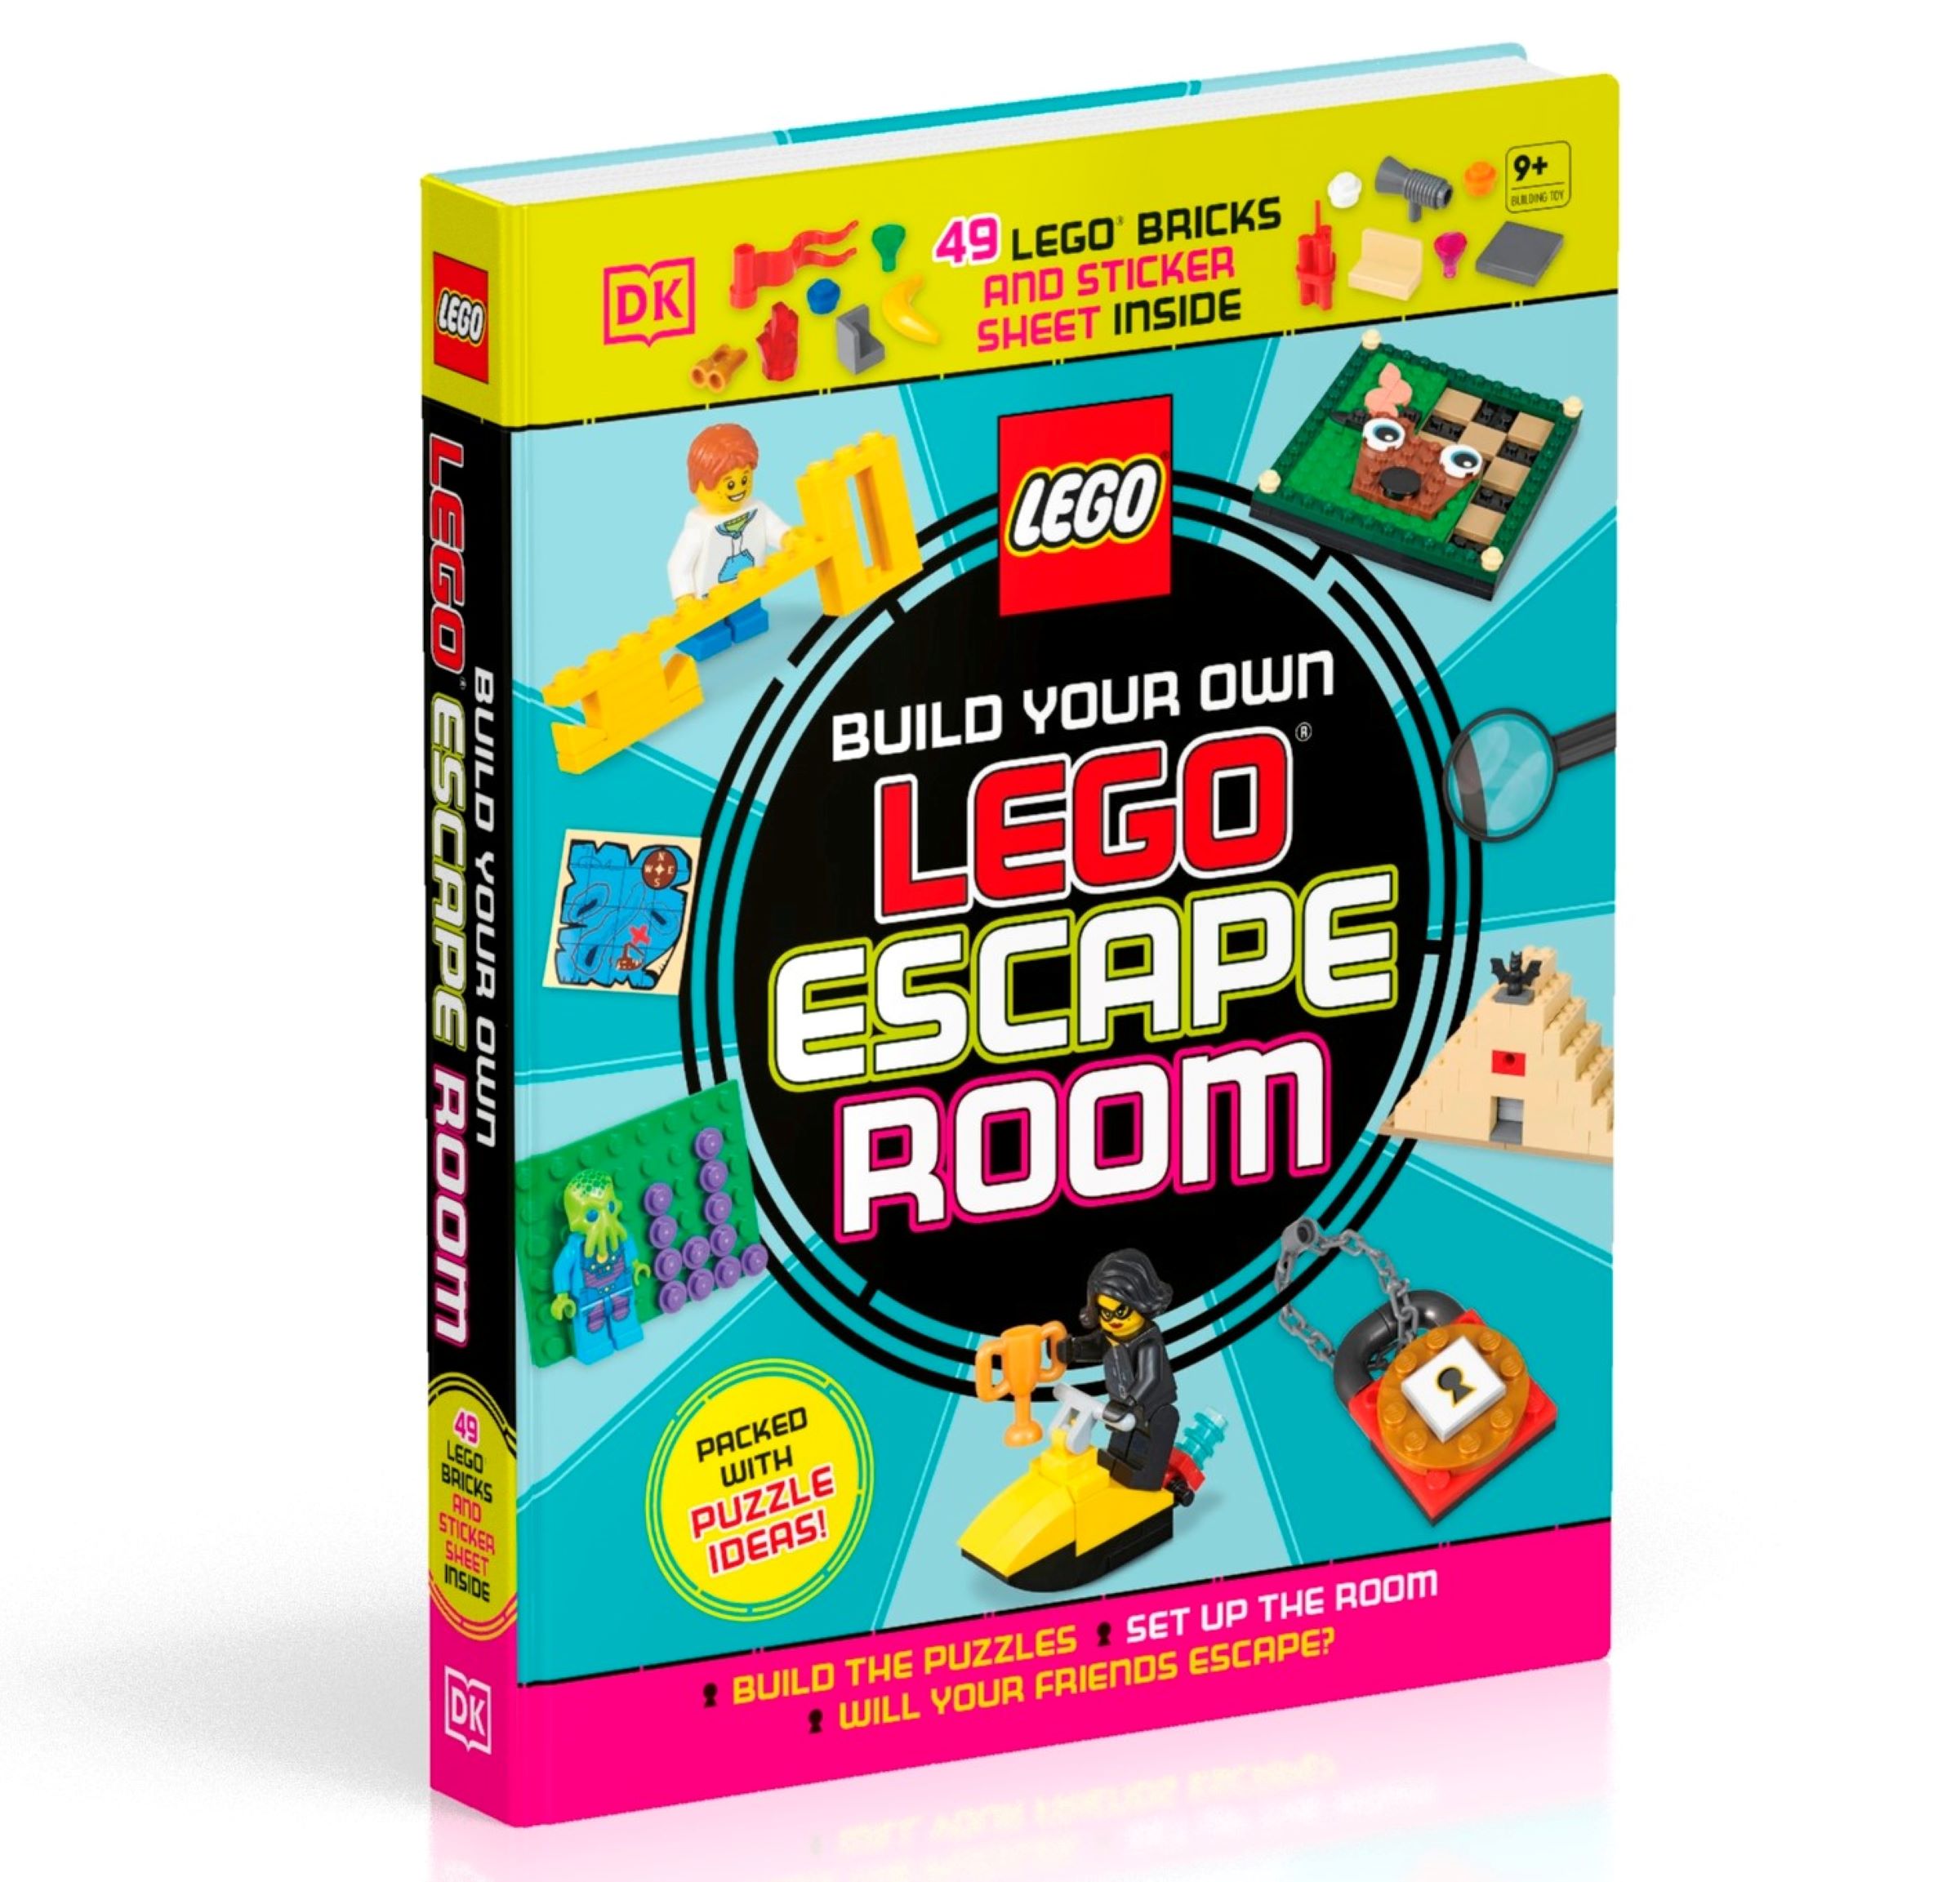 ROOM ESCAPE MAKER - Create Escape Games